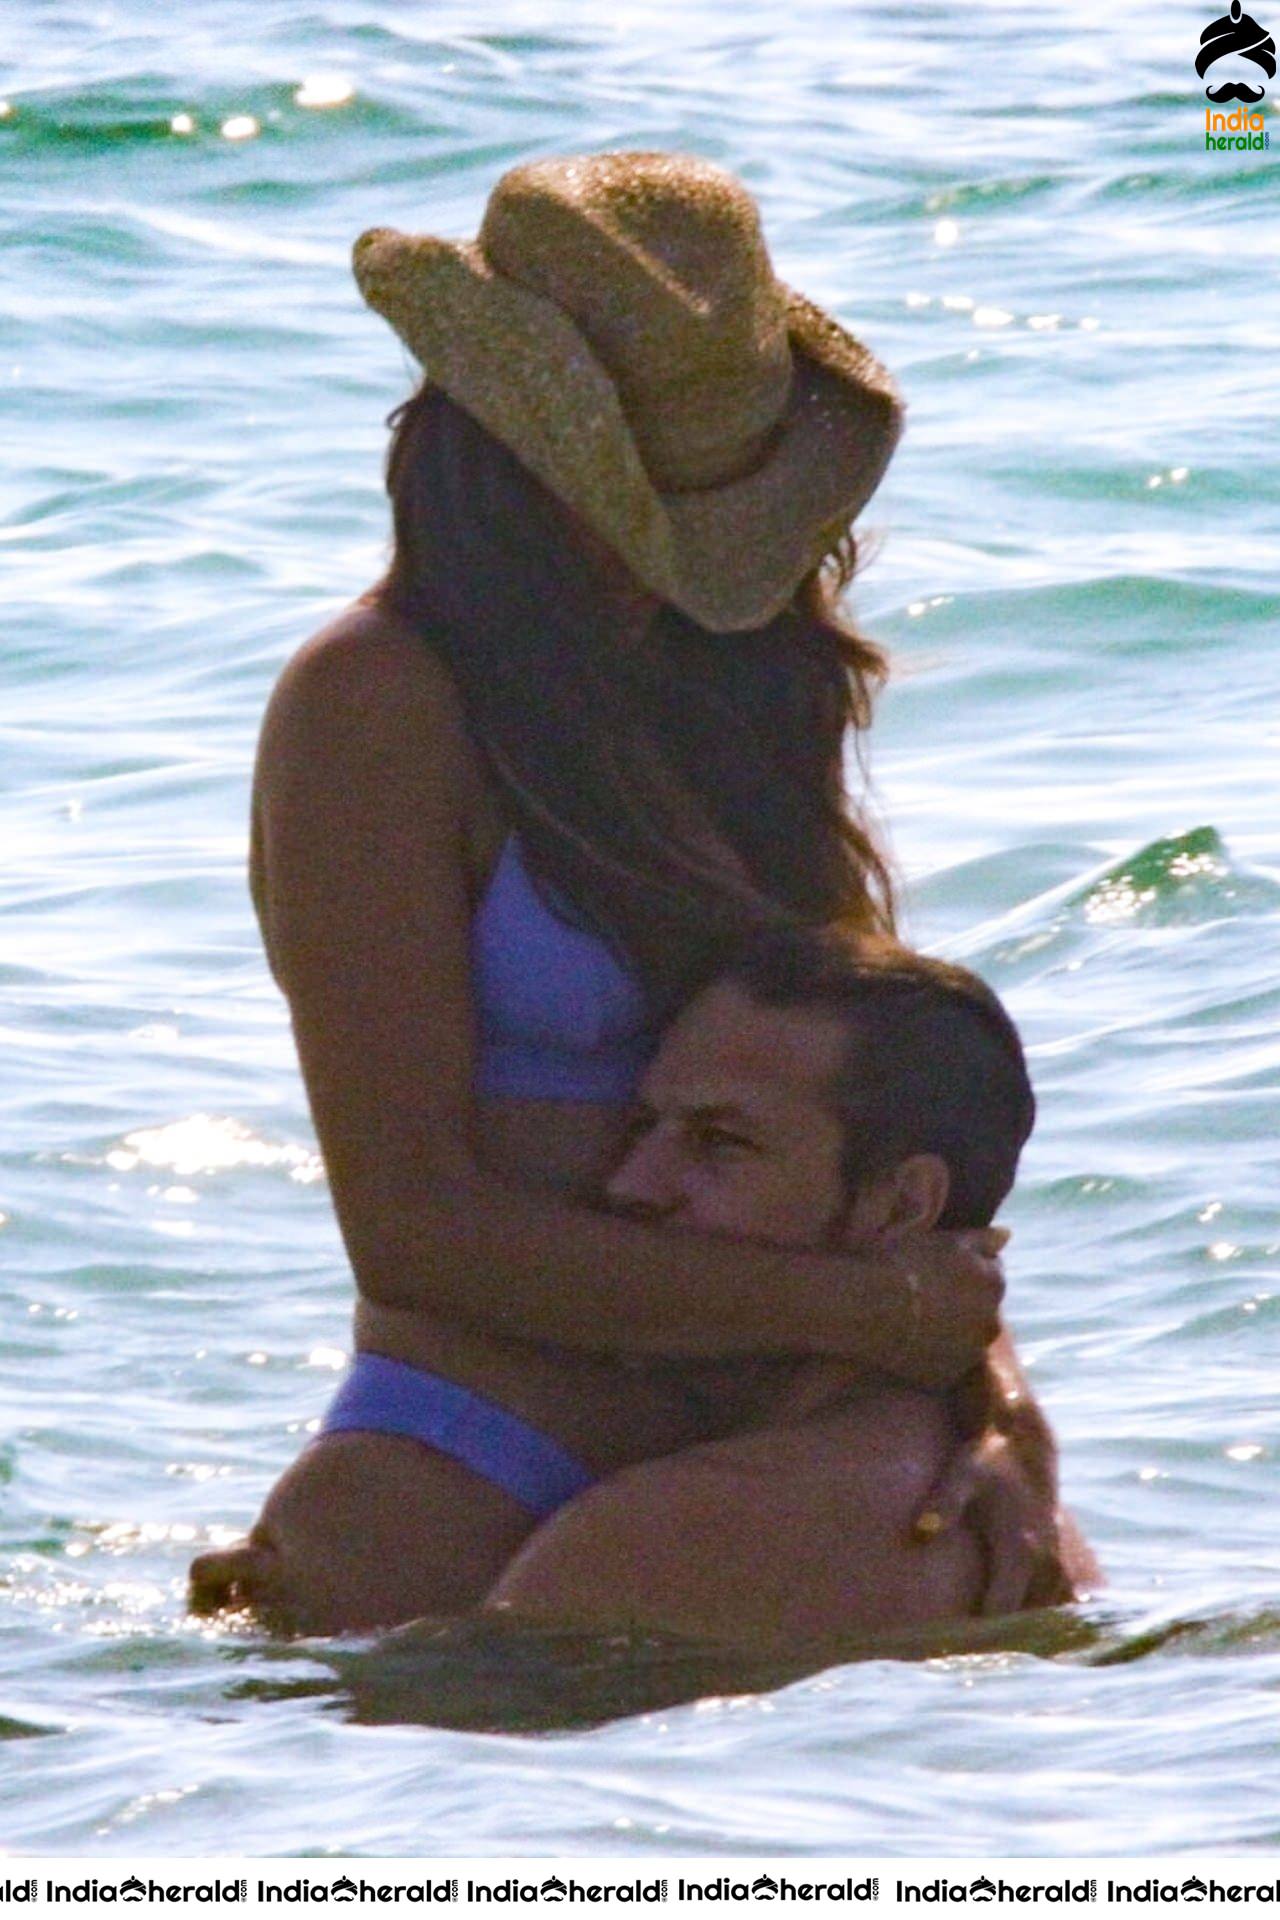 Eiza Gonzalez Enjoying with her Boyfriend in Bikini